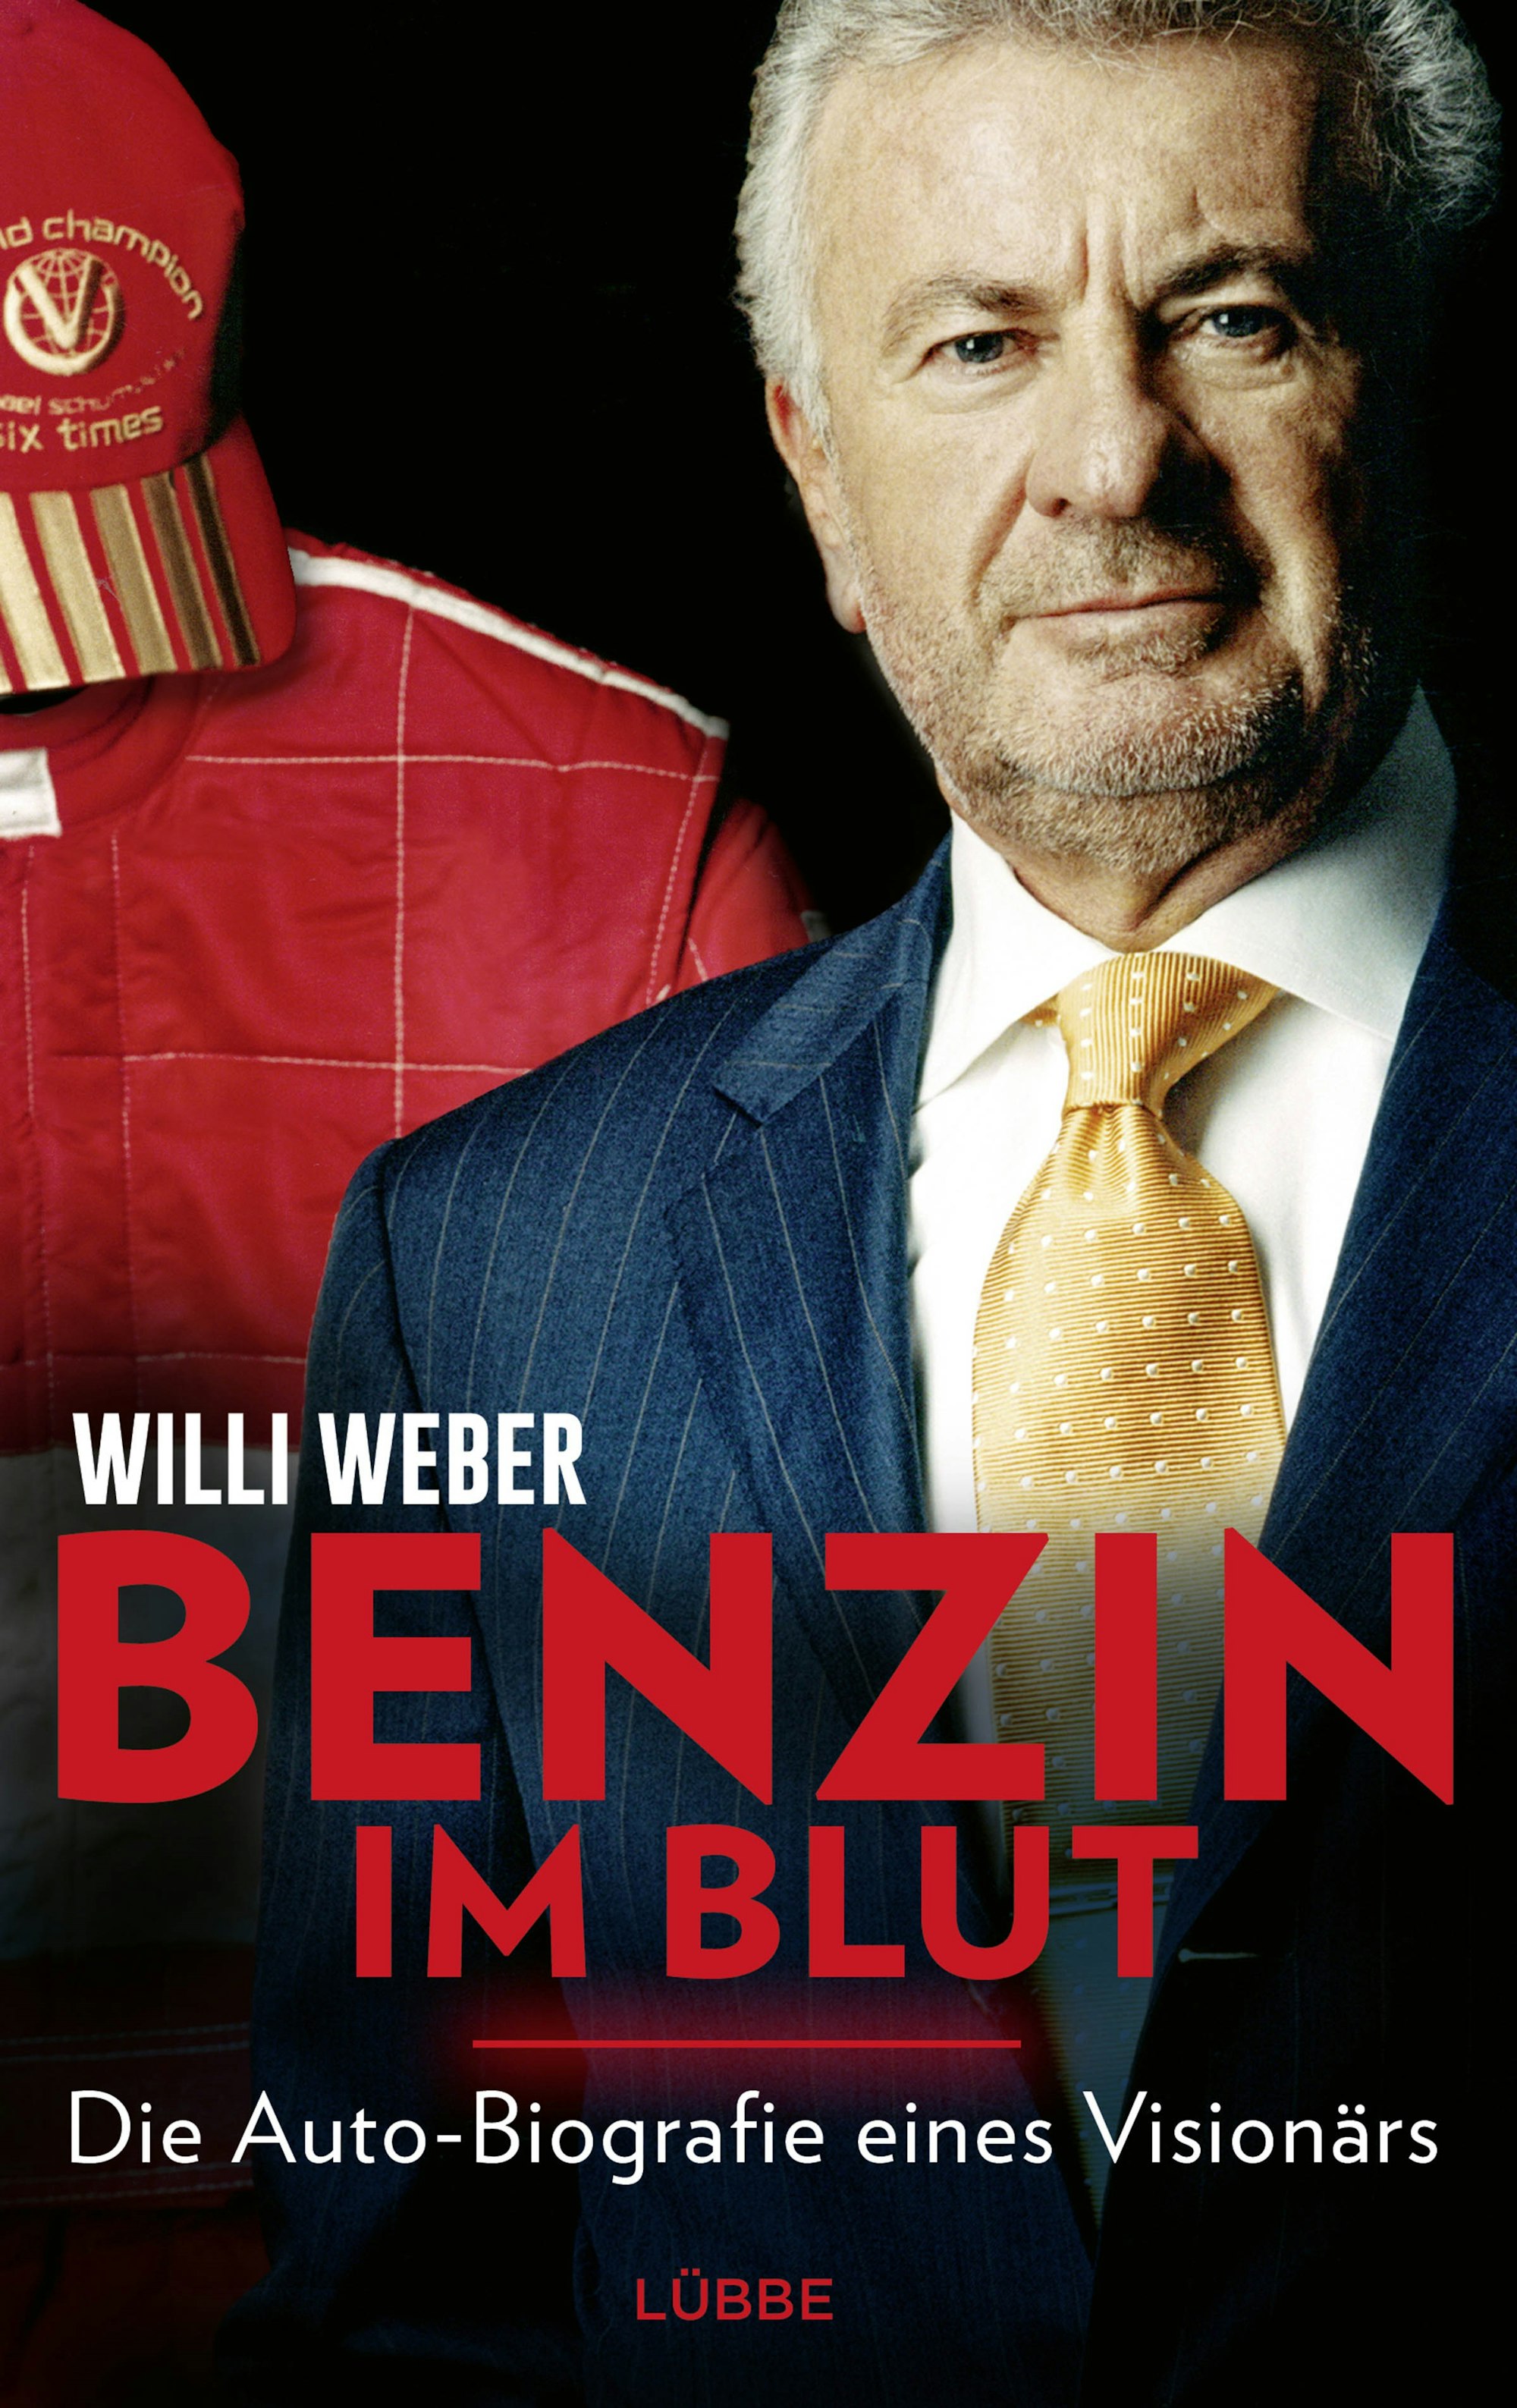 Buchcover der Autobiografie von Willi Weber: "Benzin im Blut"